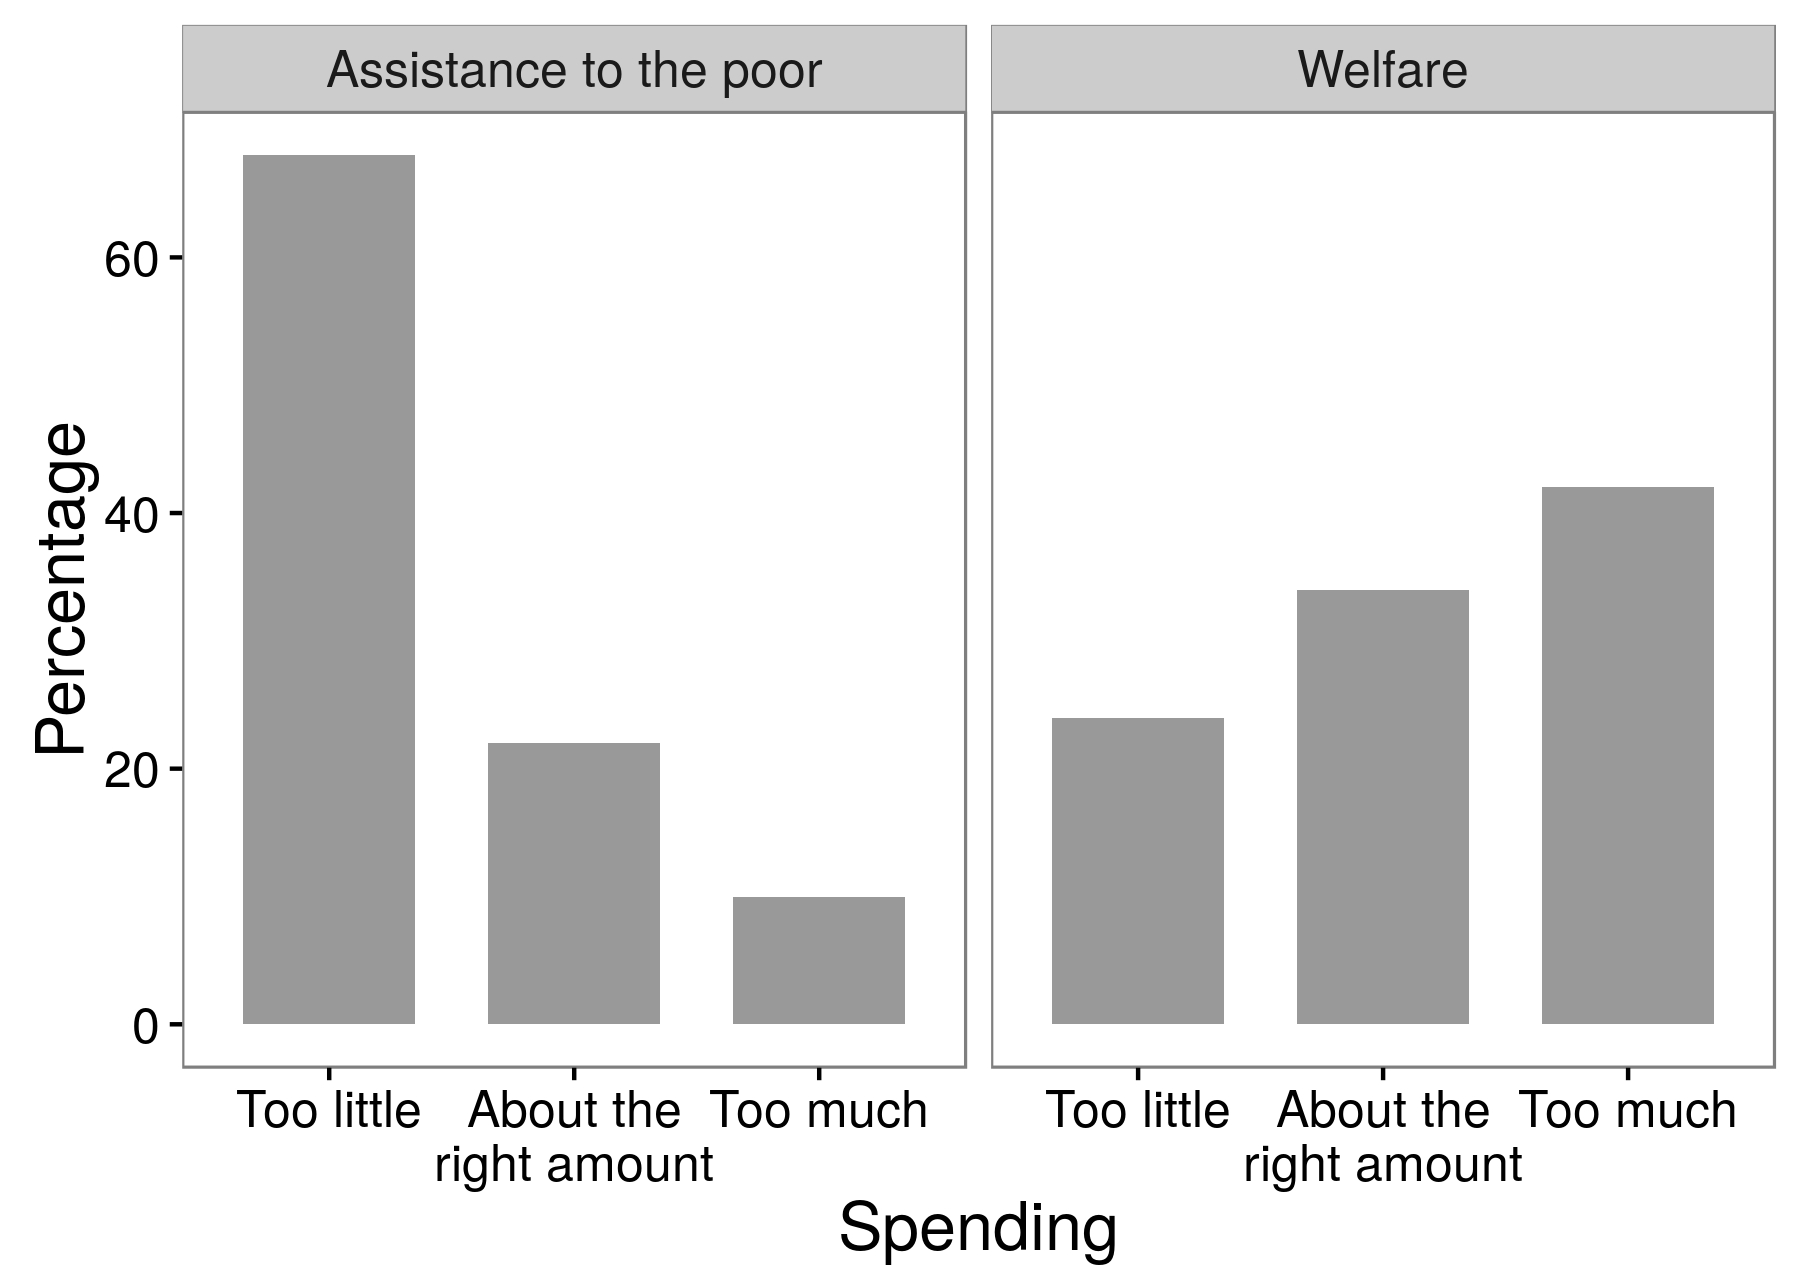 Gambar 3.4: Hasil dari eksperimen survei yang menunjukkan bahwa responden jauh lebih mendukung bantuan kepada orang miskin daripada kesejahteraan. Ini adalah contoh dari efek kata-kata pertanyaan di mana jawaban yang diterima peneliti bergantung pada kata-kata mana yang mereka gunakan dalam pertanyaan mereka. Diadaptasi dari Huber dan Paris (2013), tabel A1.